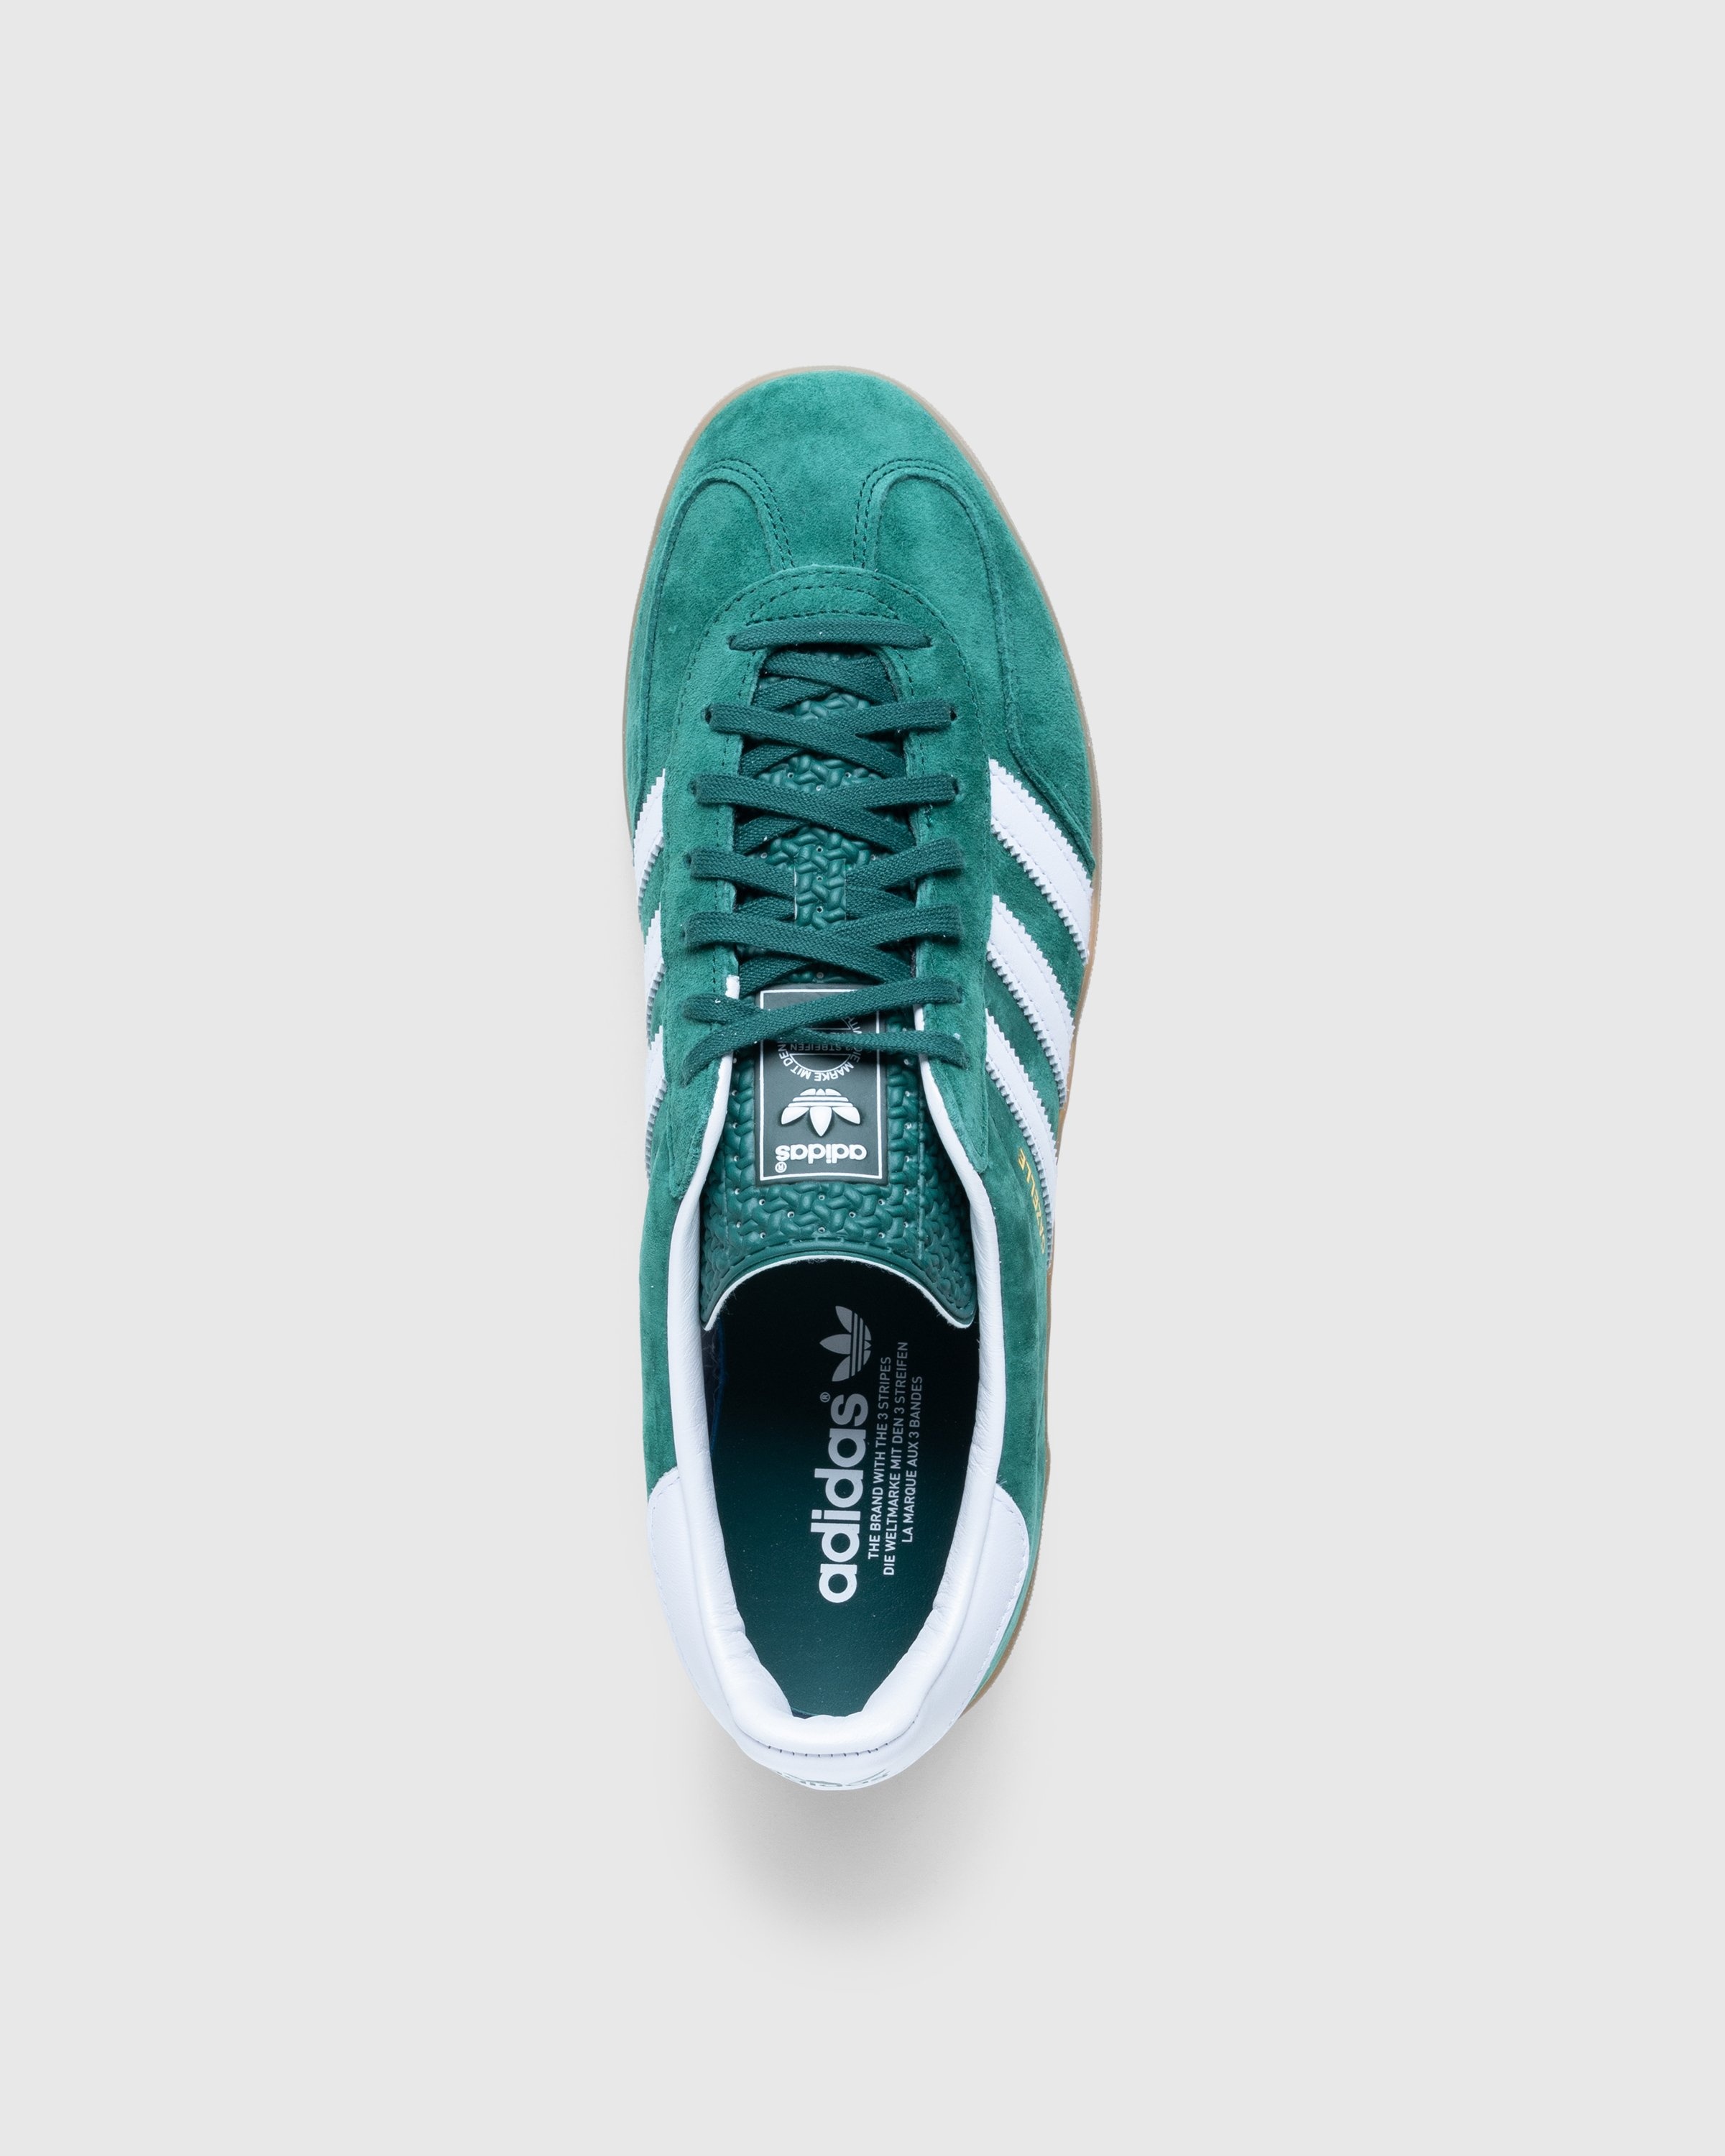 Adidas – Gazelle Indoor Collegiate Green | Highsnobiety Shop